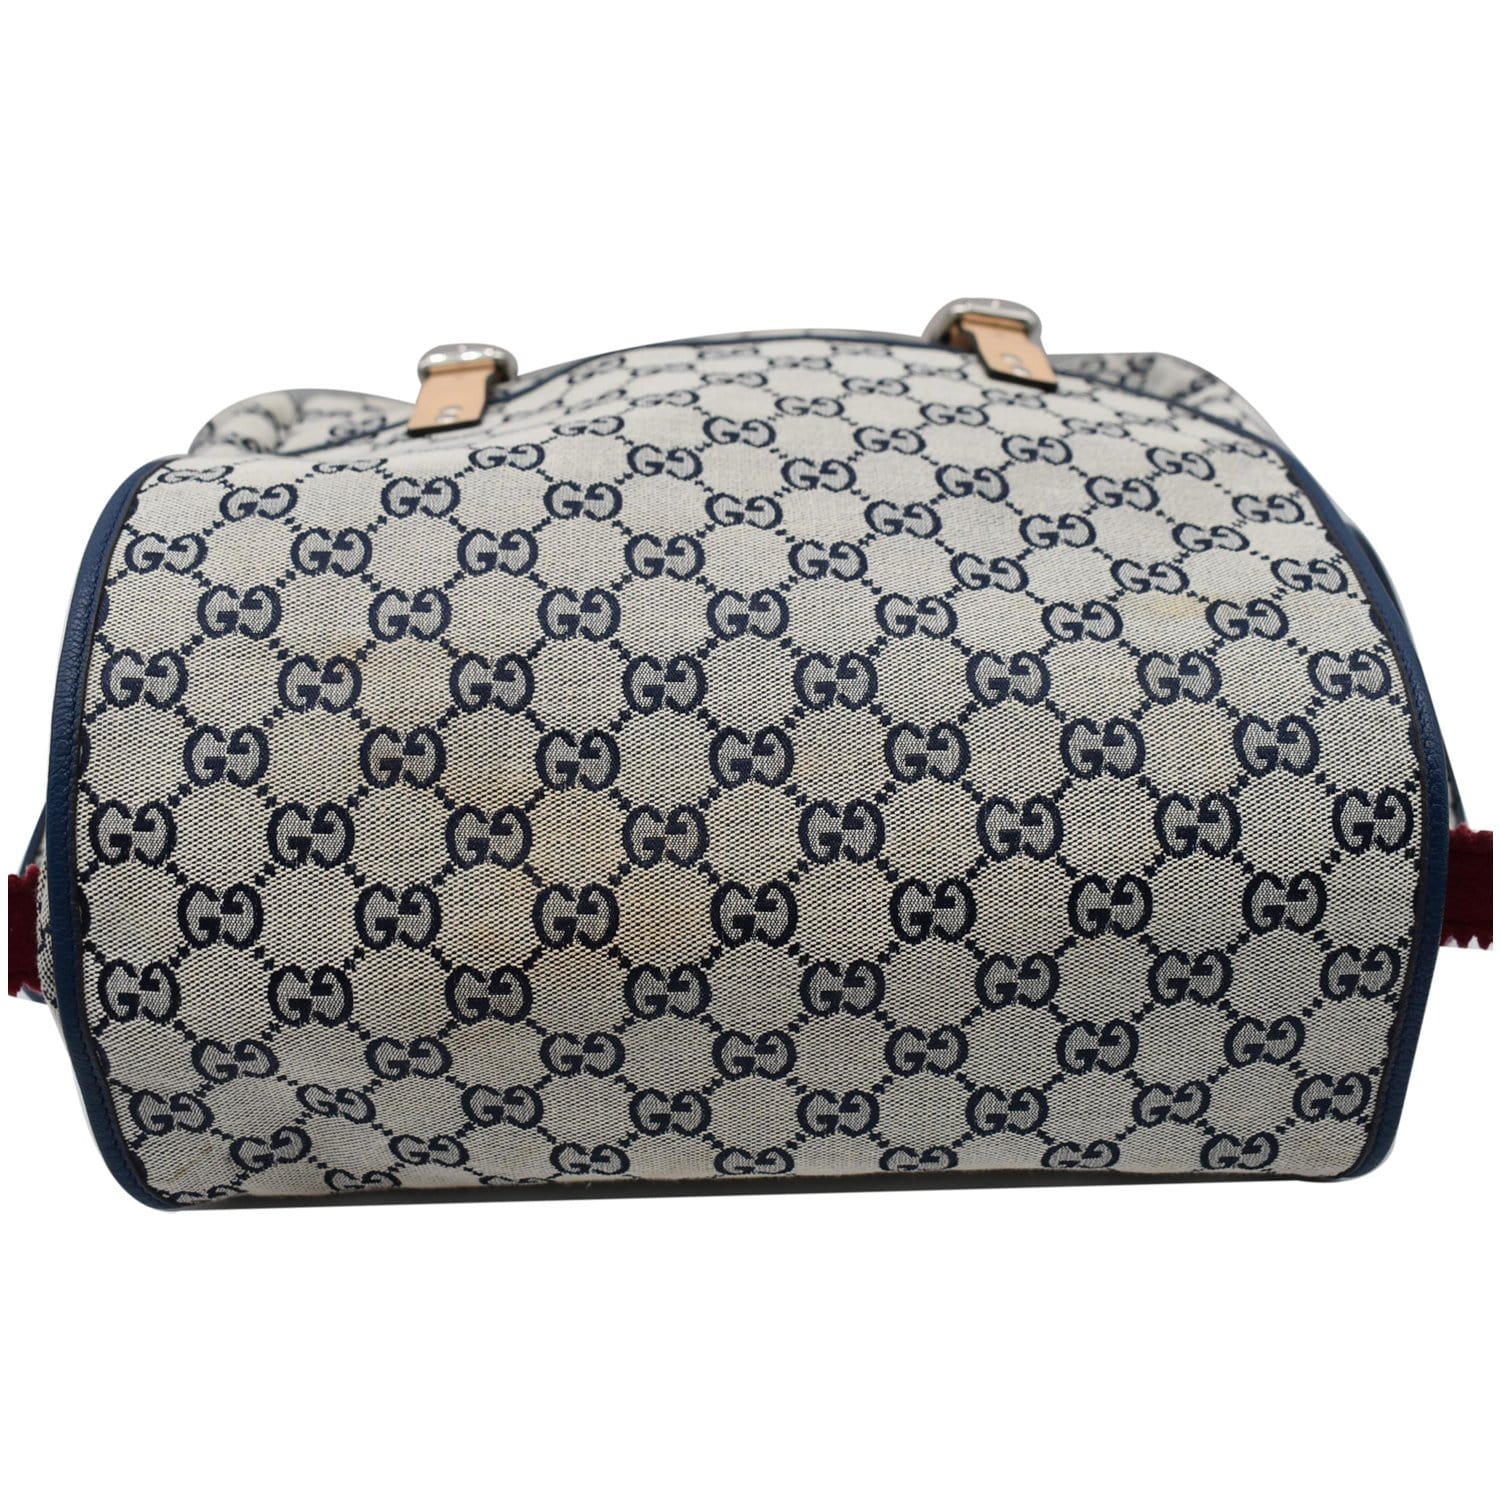 Pre-Owned Gucci GG Supreme Diaper Bag 